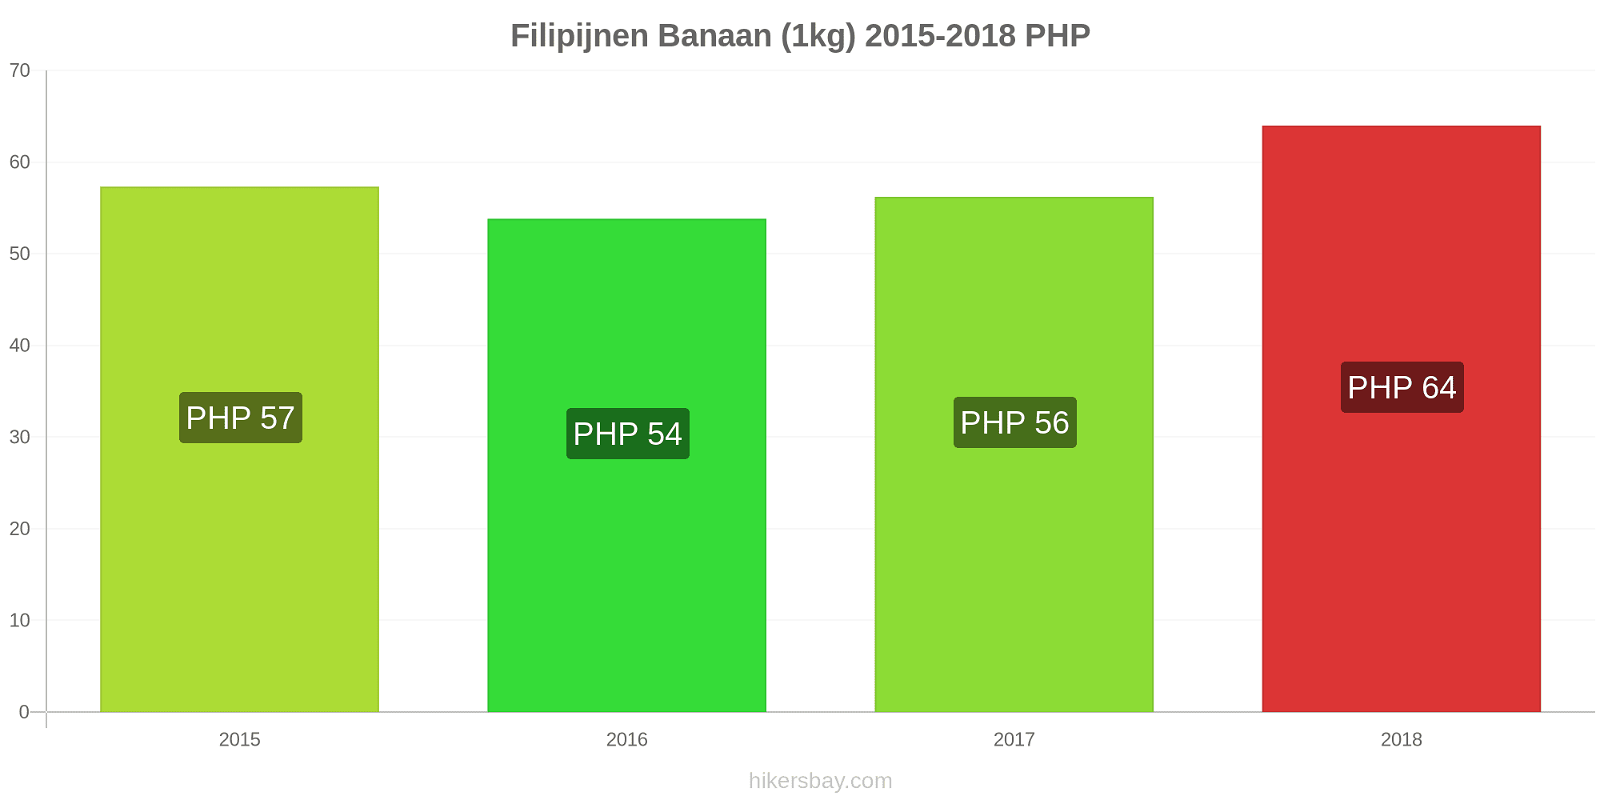 Filipijnen prijswijzigingen Bananen (1kg) hikersbay.com